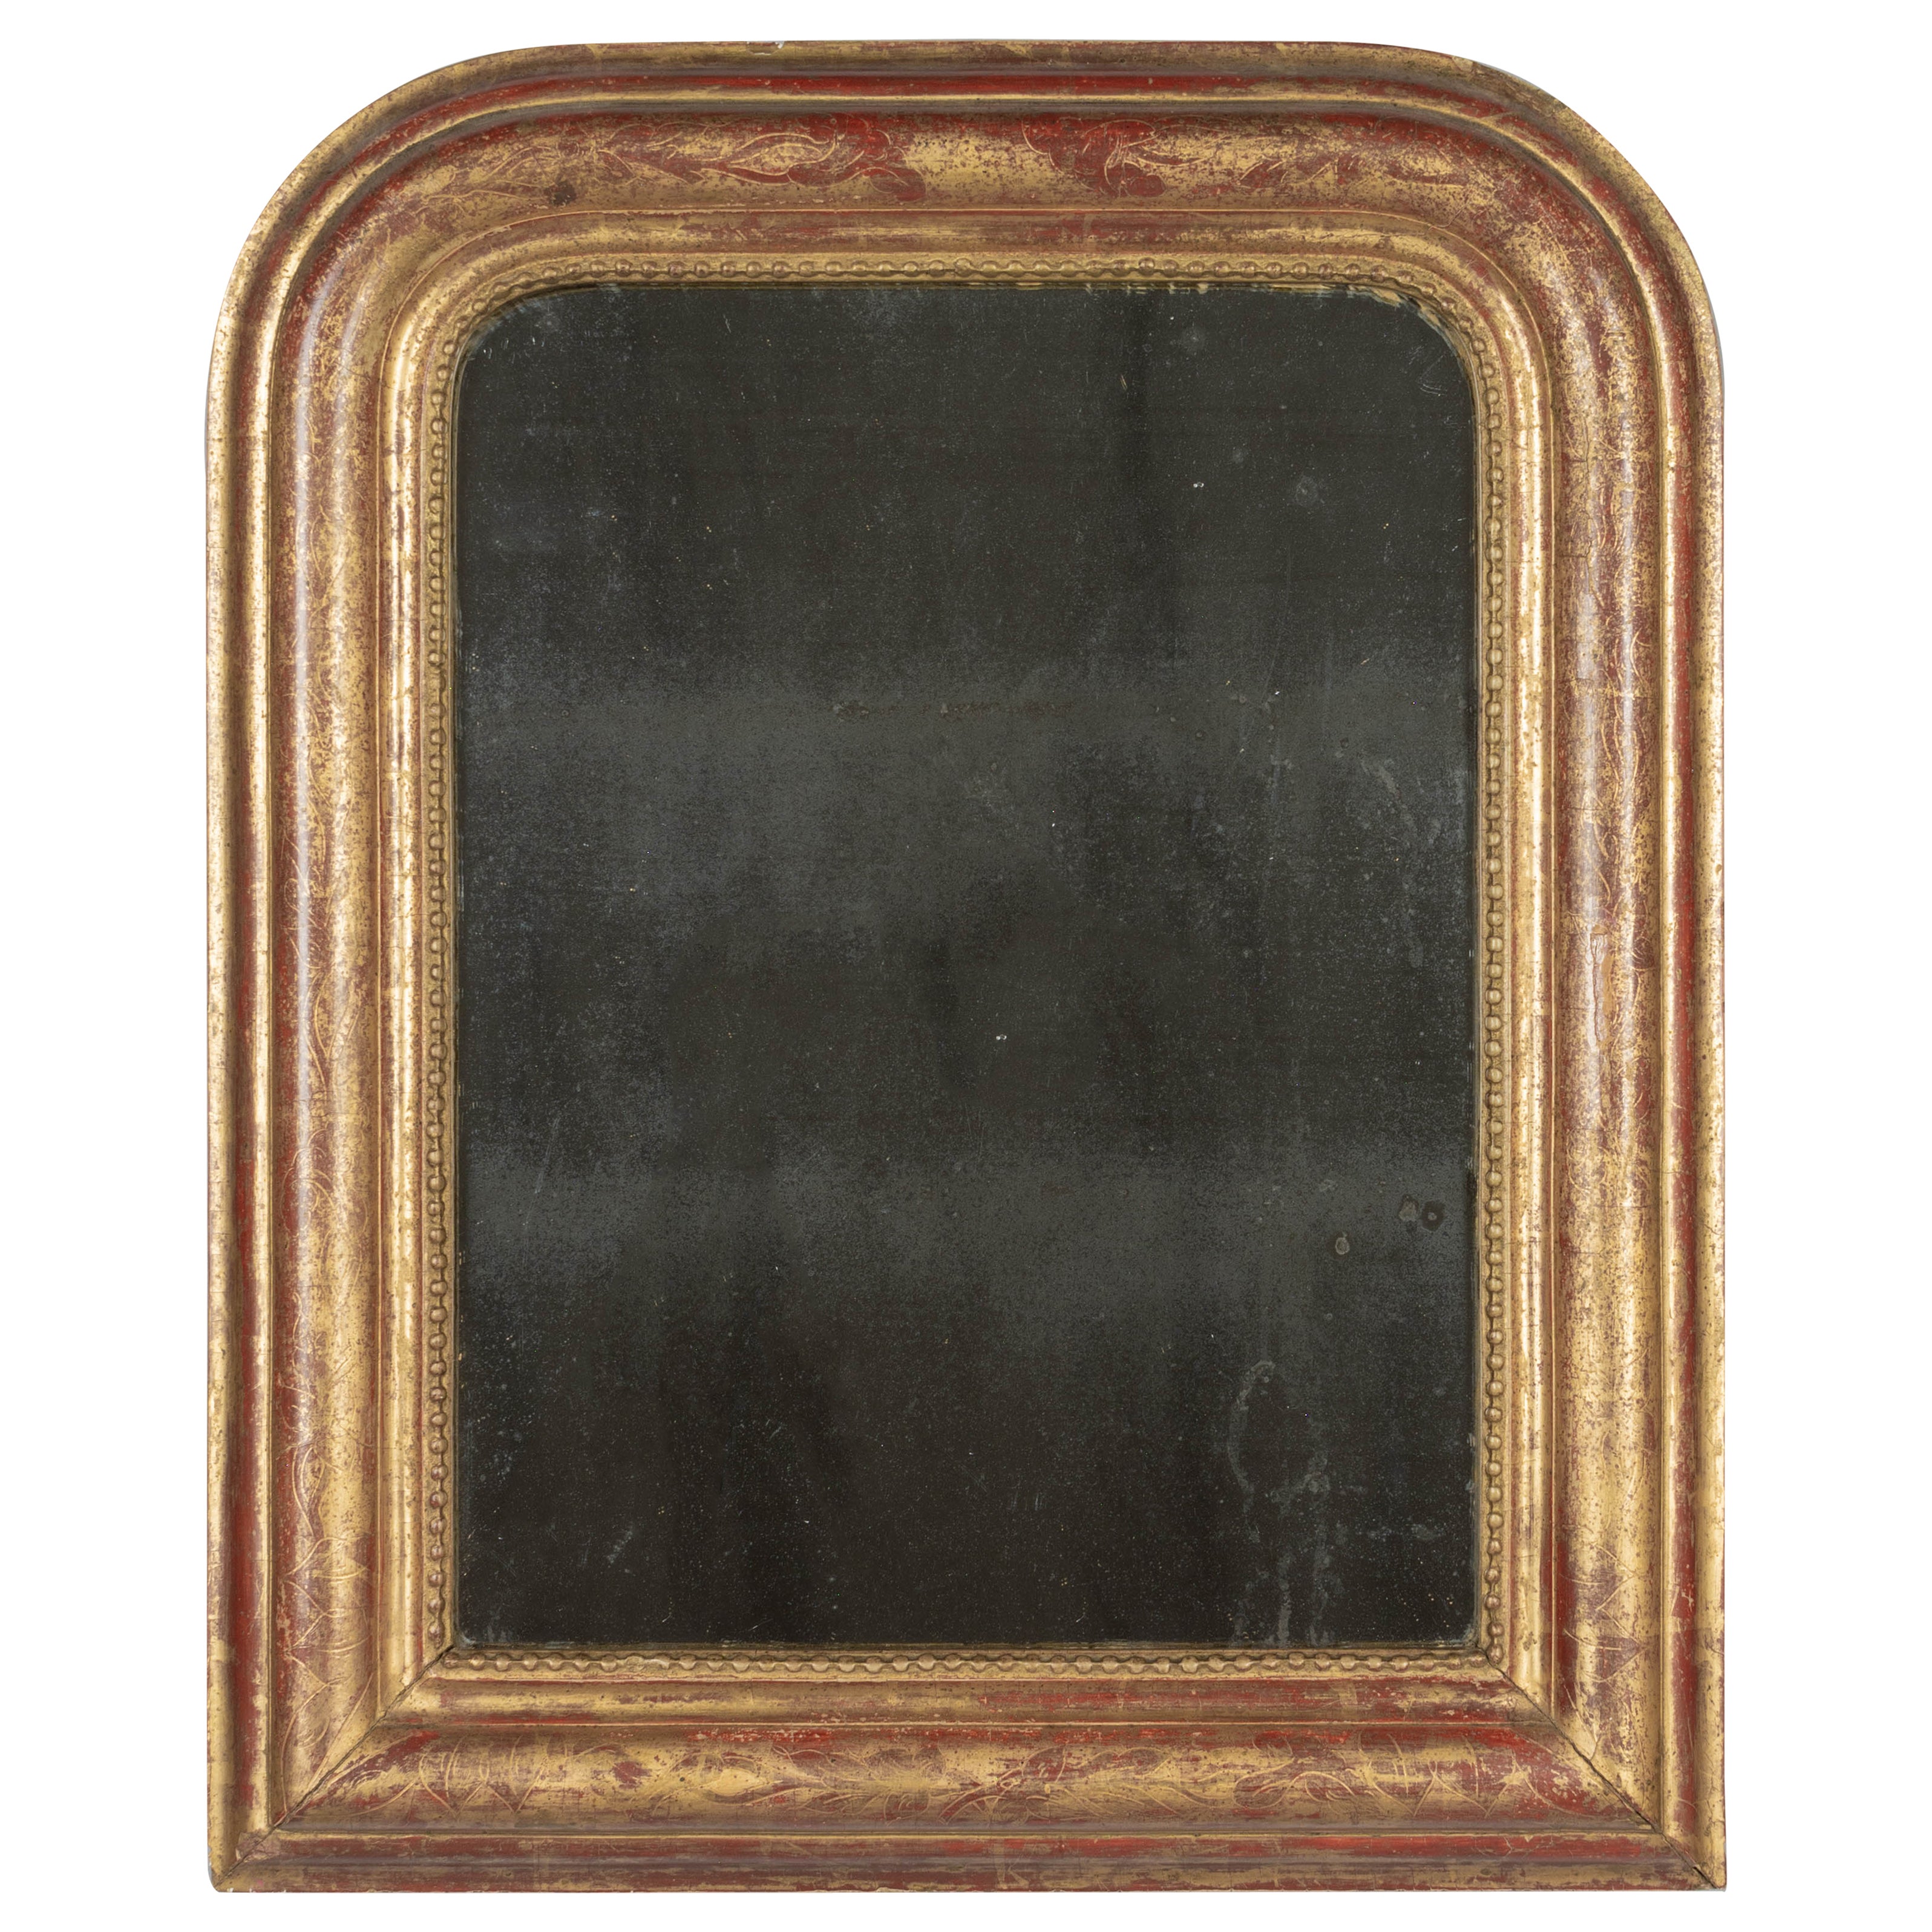 Miroir doré français Louis Philippe du 19ème siècle